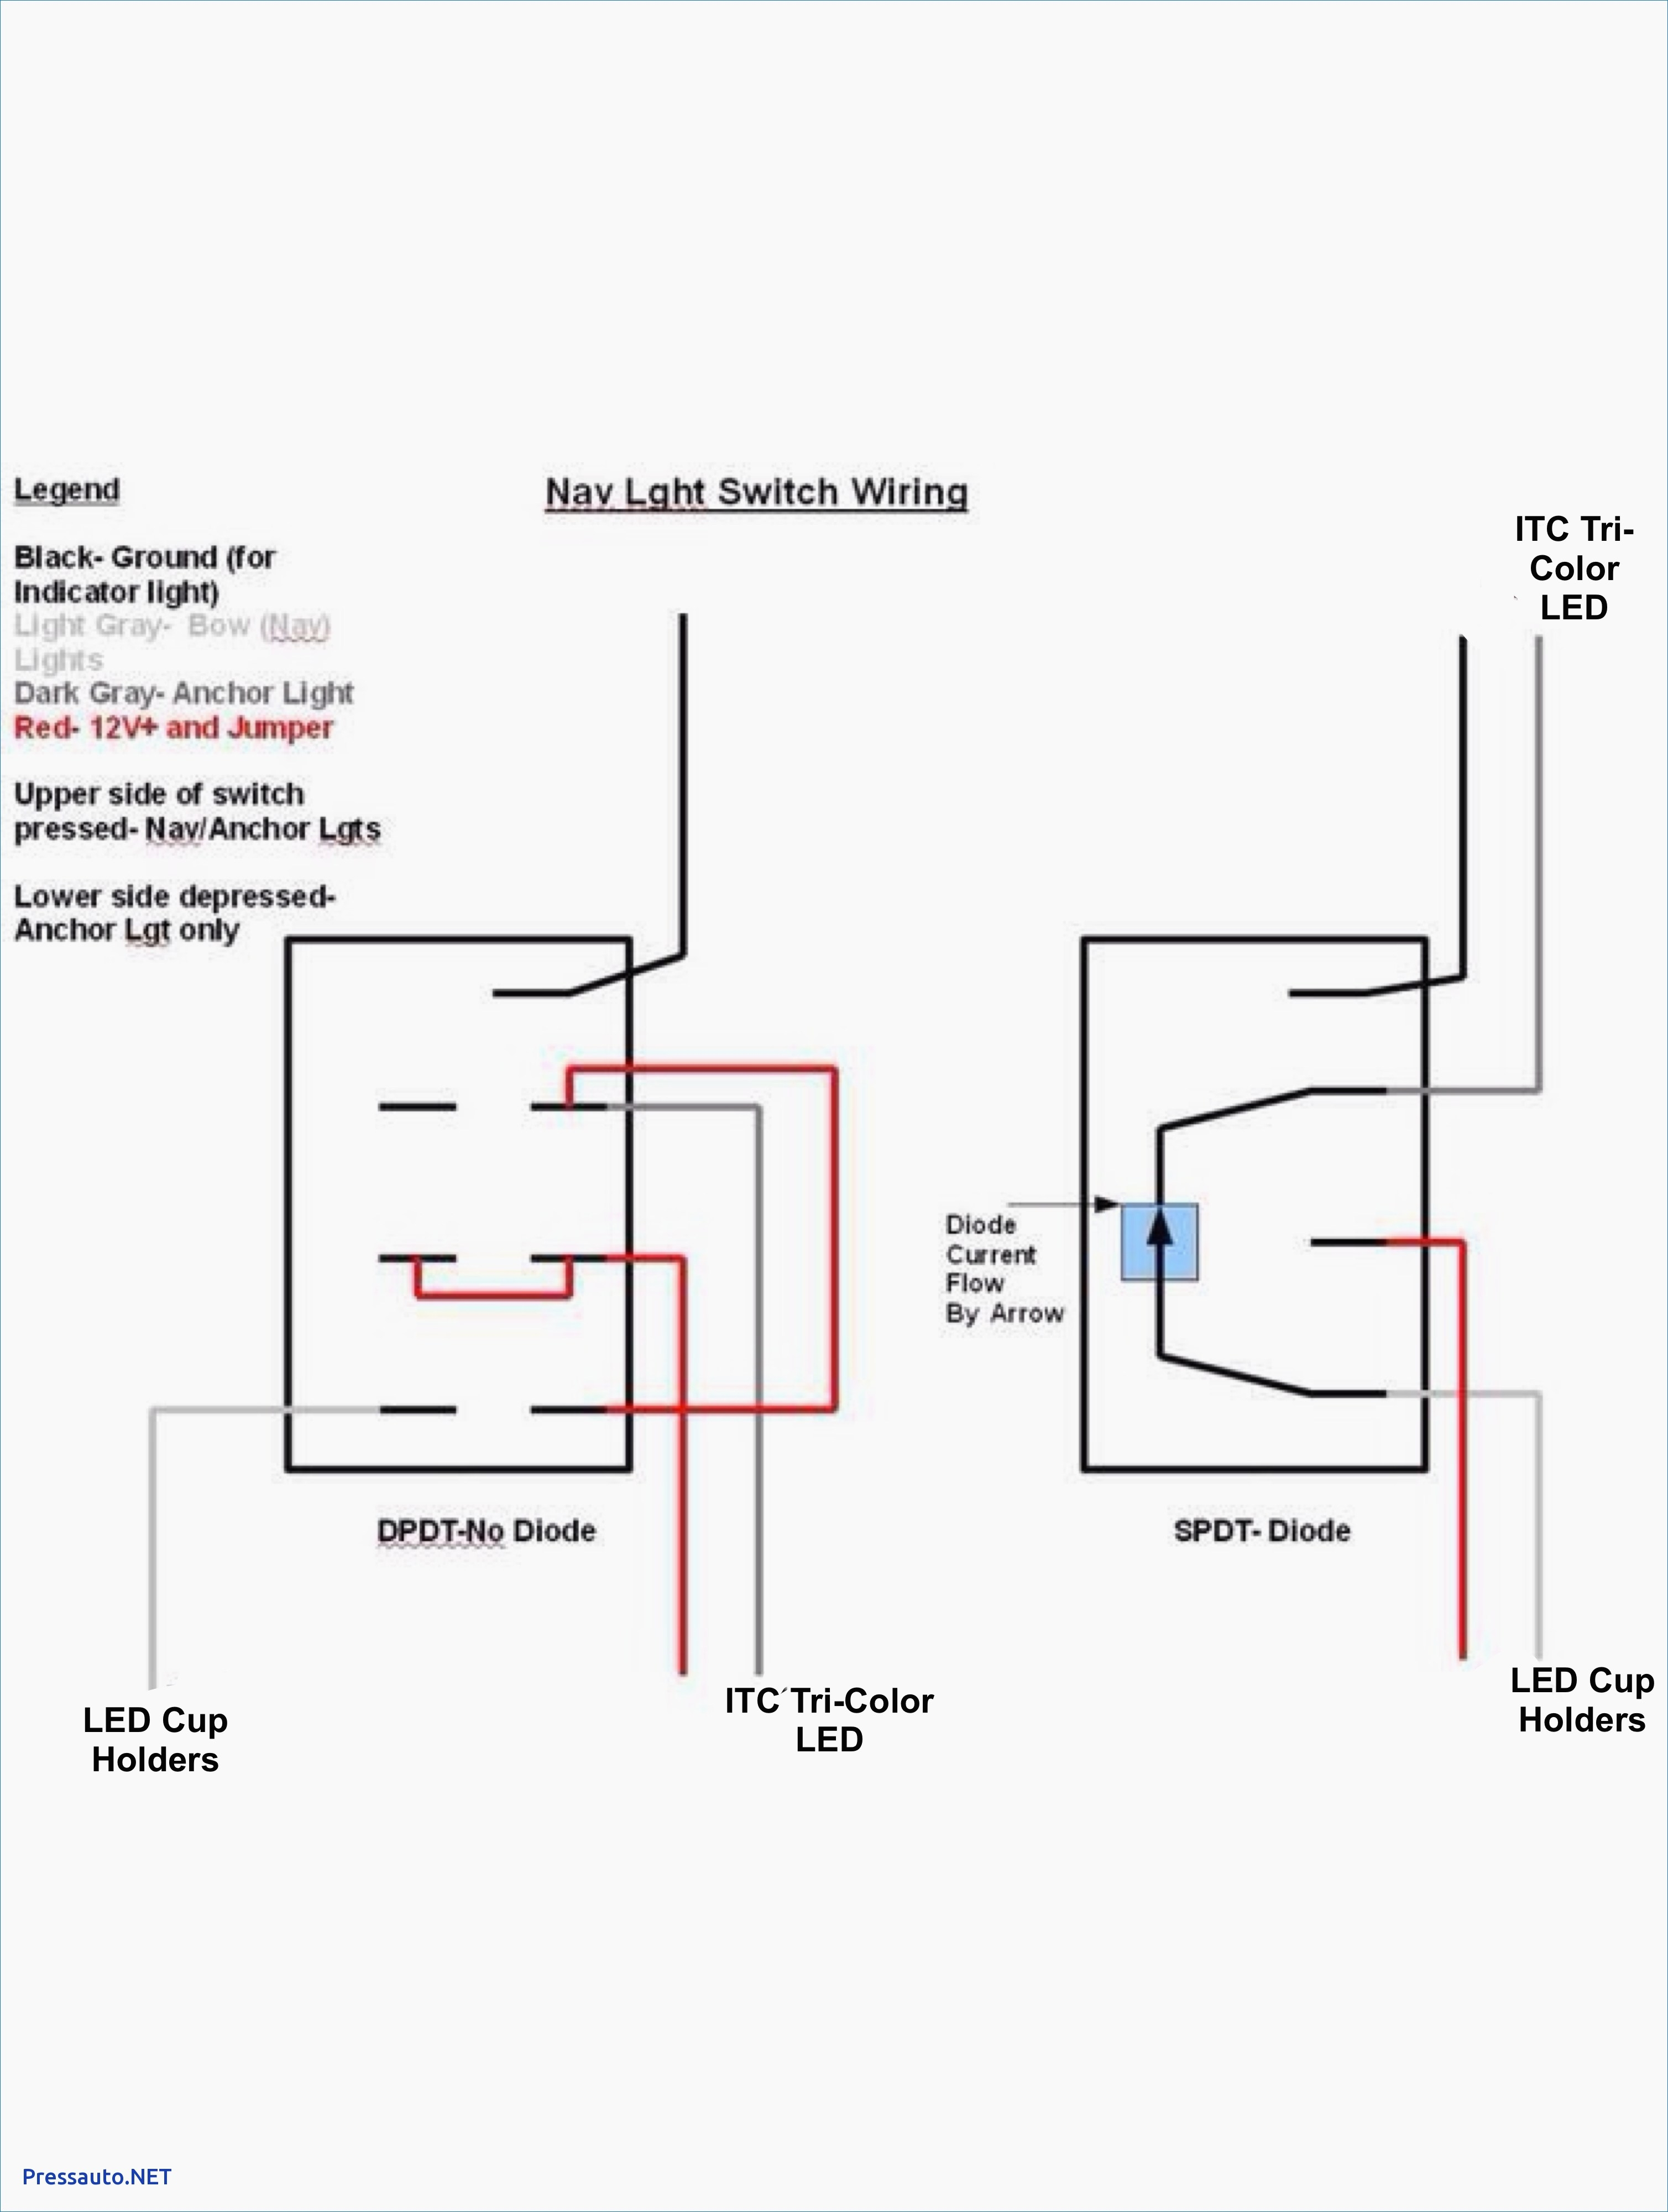 3 Way Wiring Diagram 6 Way Wiring Diagram Leviton Light Switch Wiring Diagrams Home